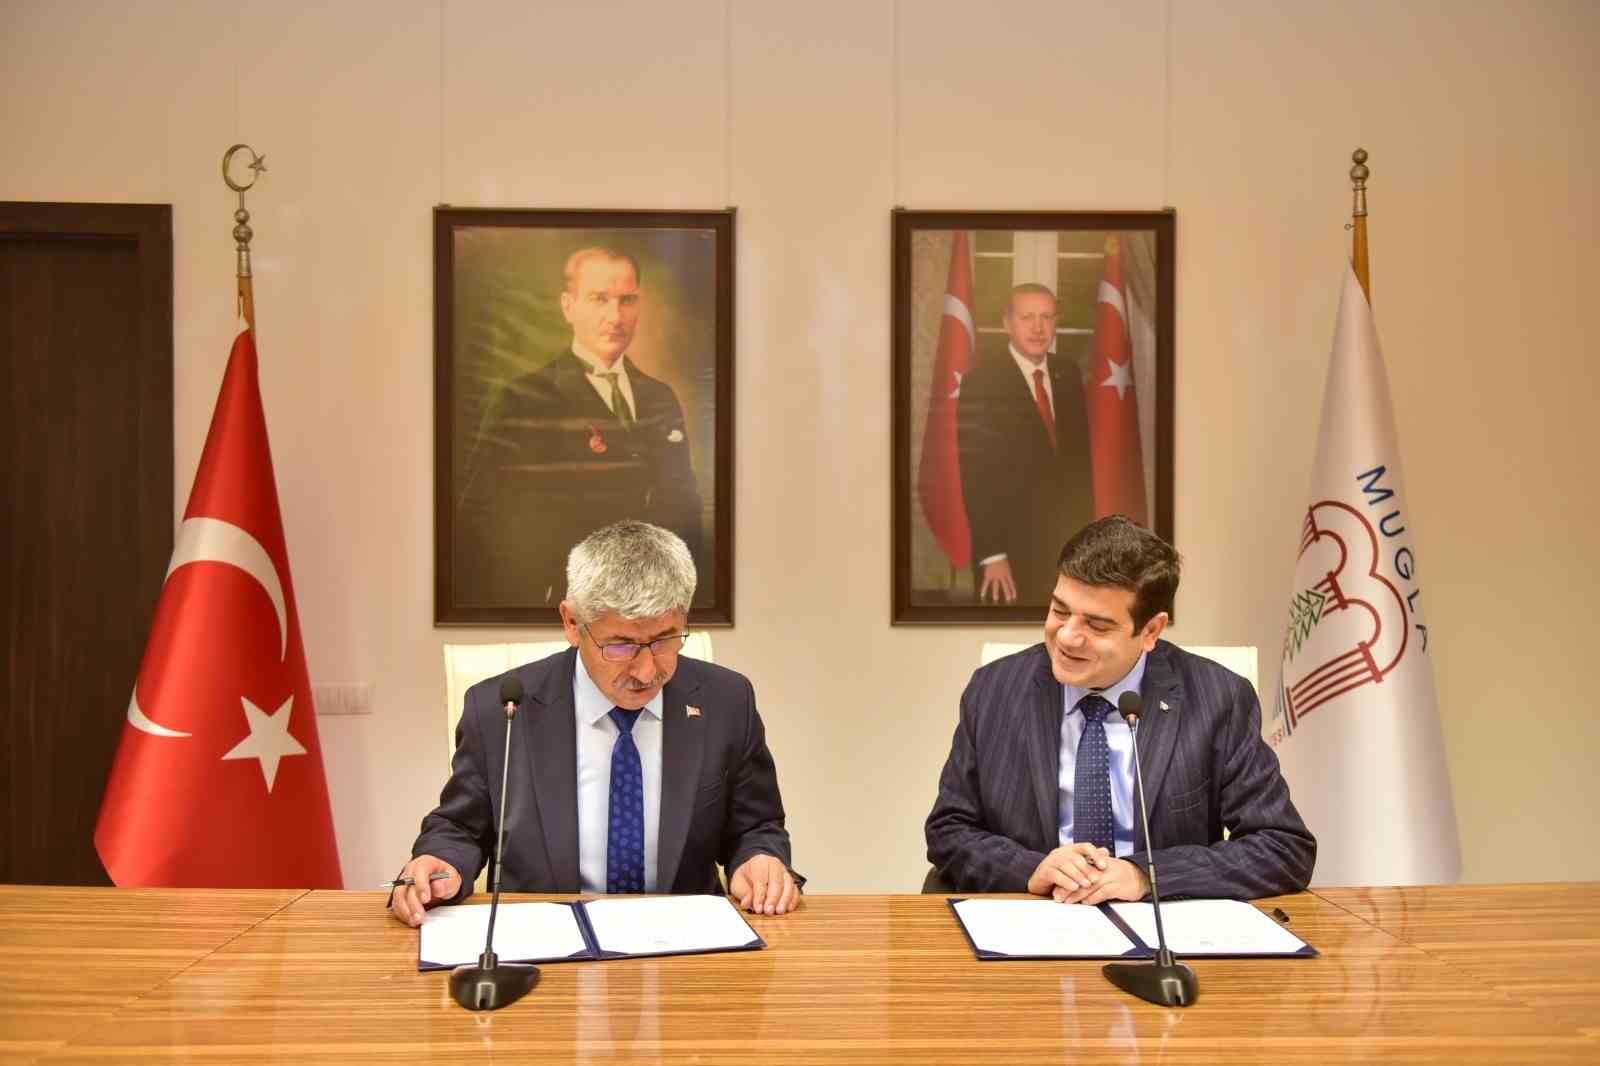 Muğla Sıtkı Koçman Üniversitesi ile MGÜ arasında iş birliği protokolü imzalandı
